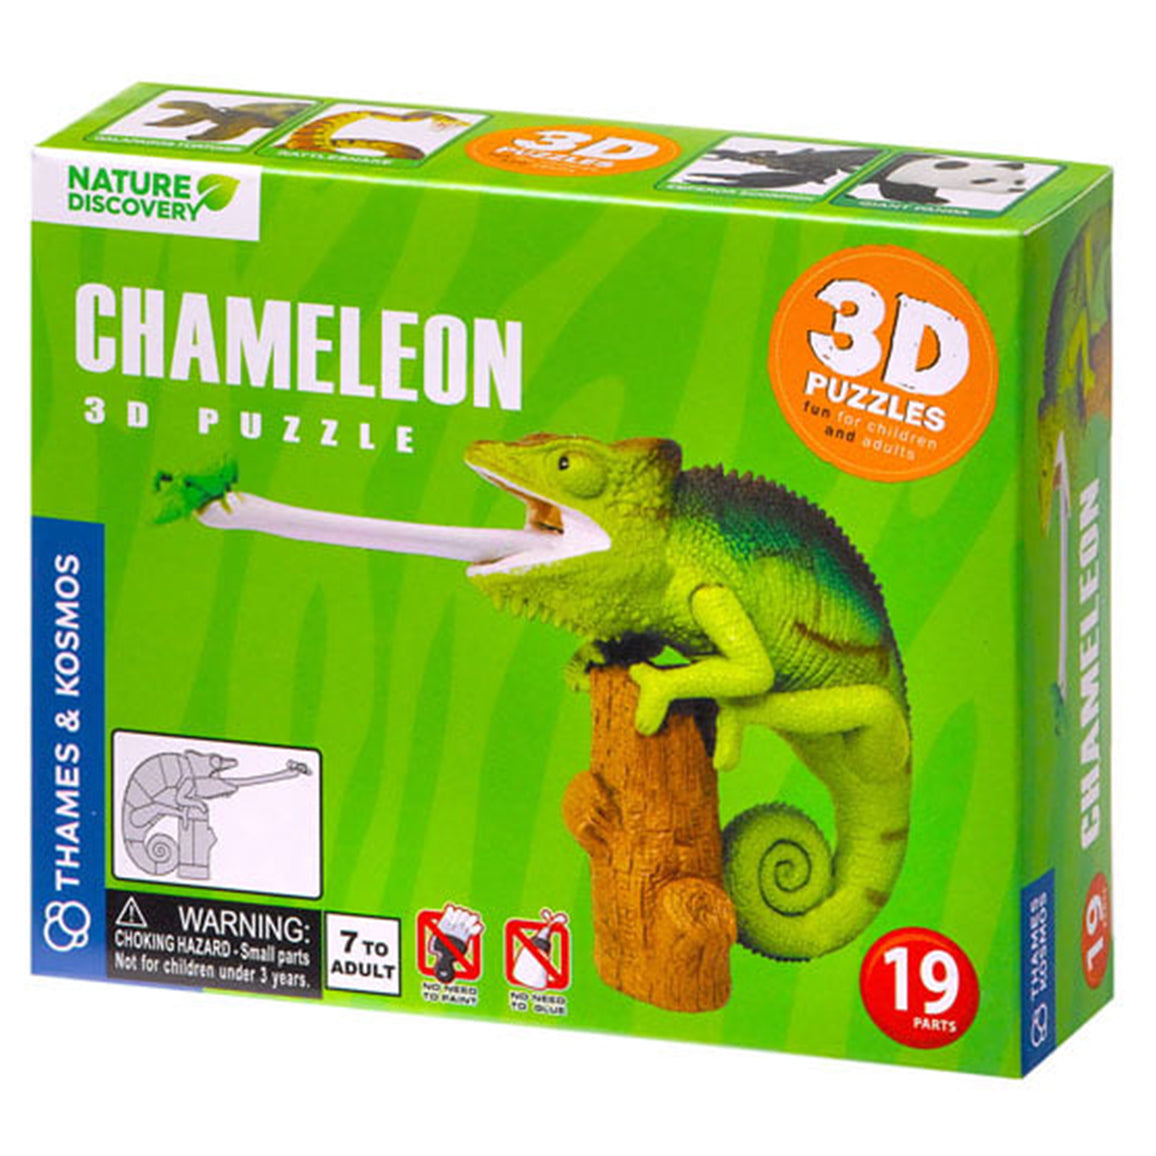 264910  3D Puzzle Chameleon